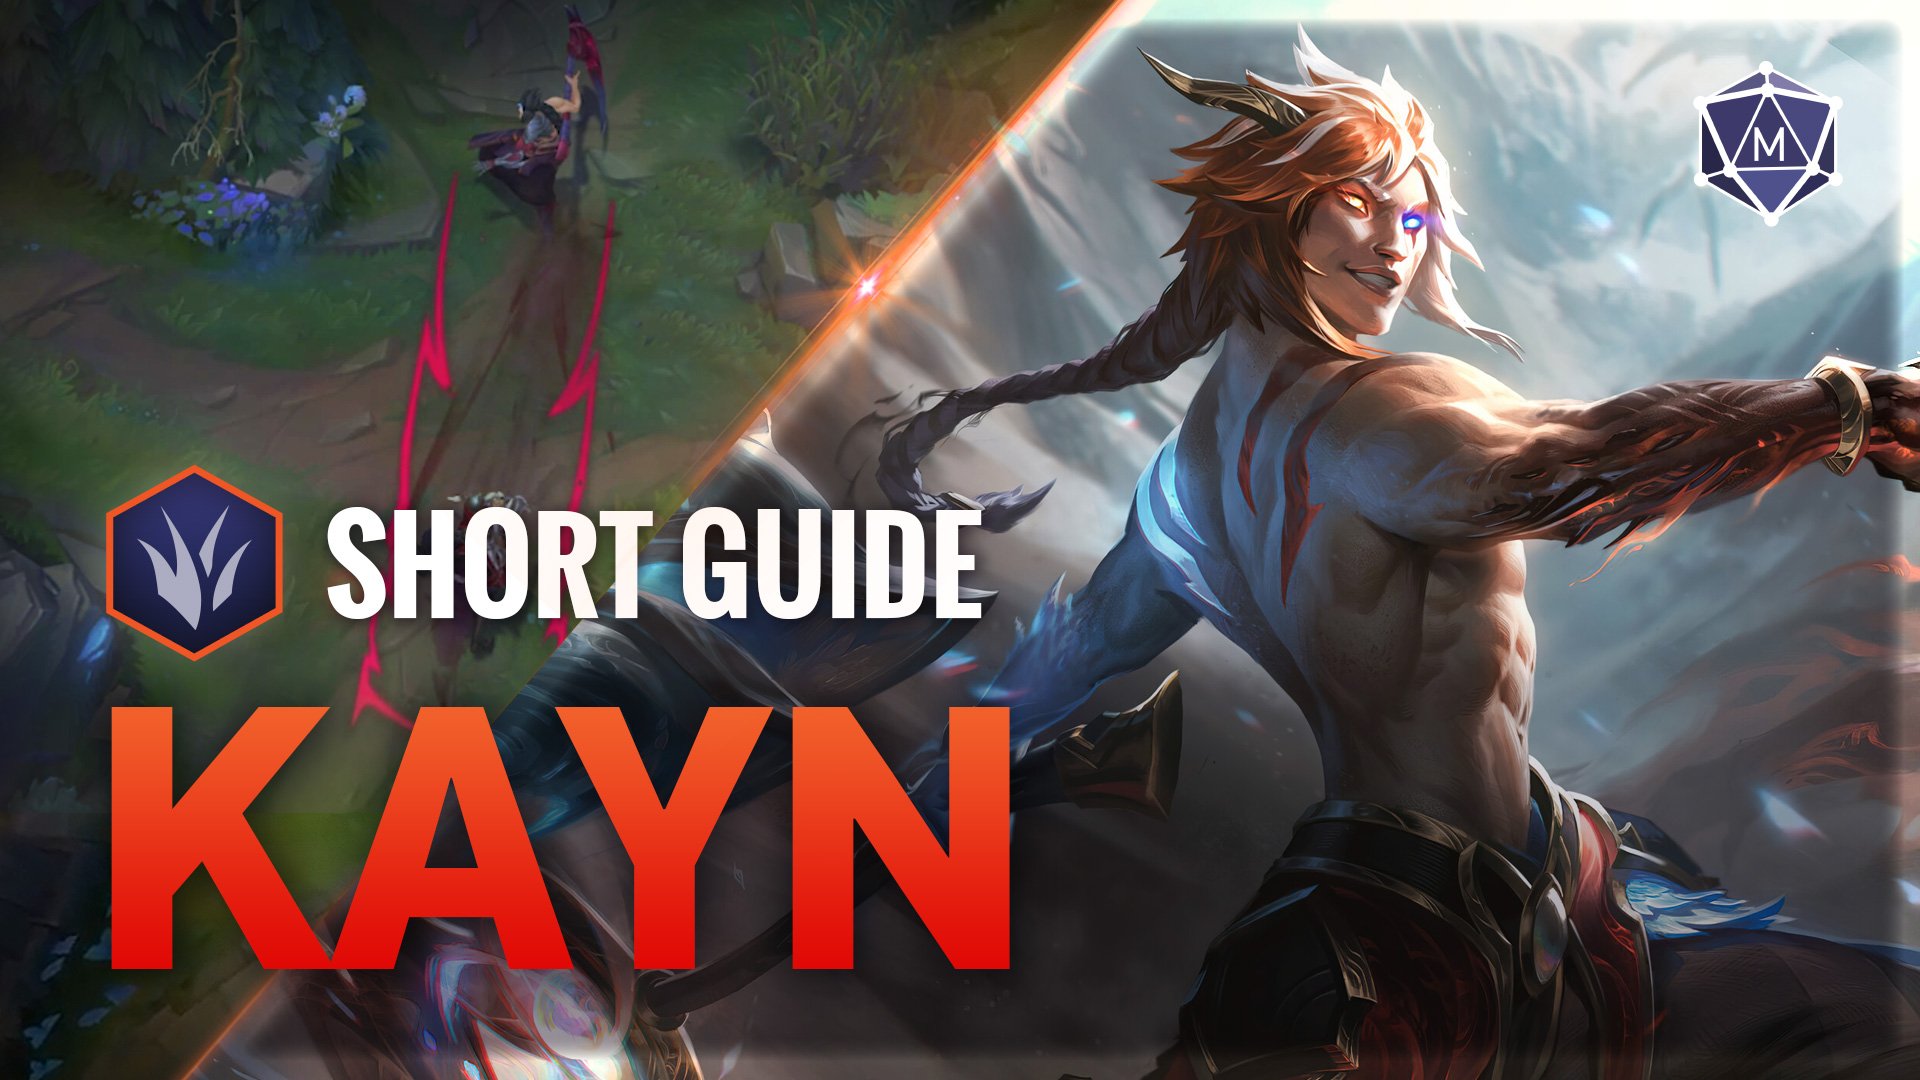 Kayn expert guide